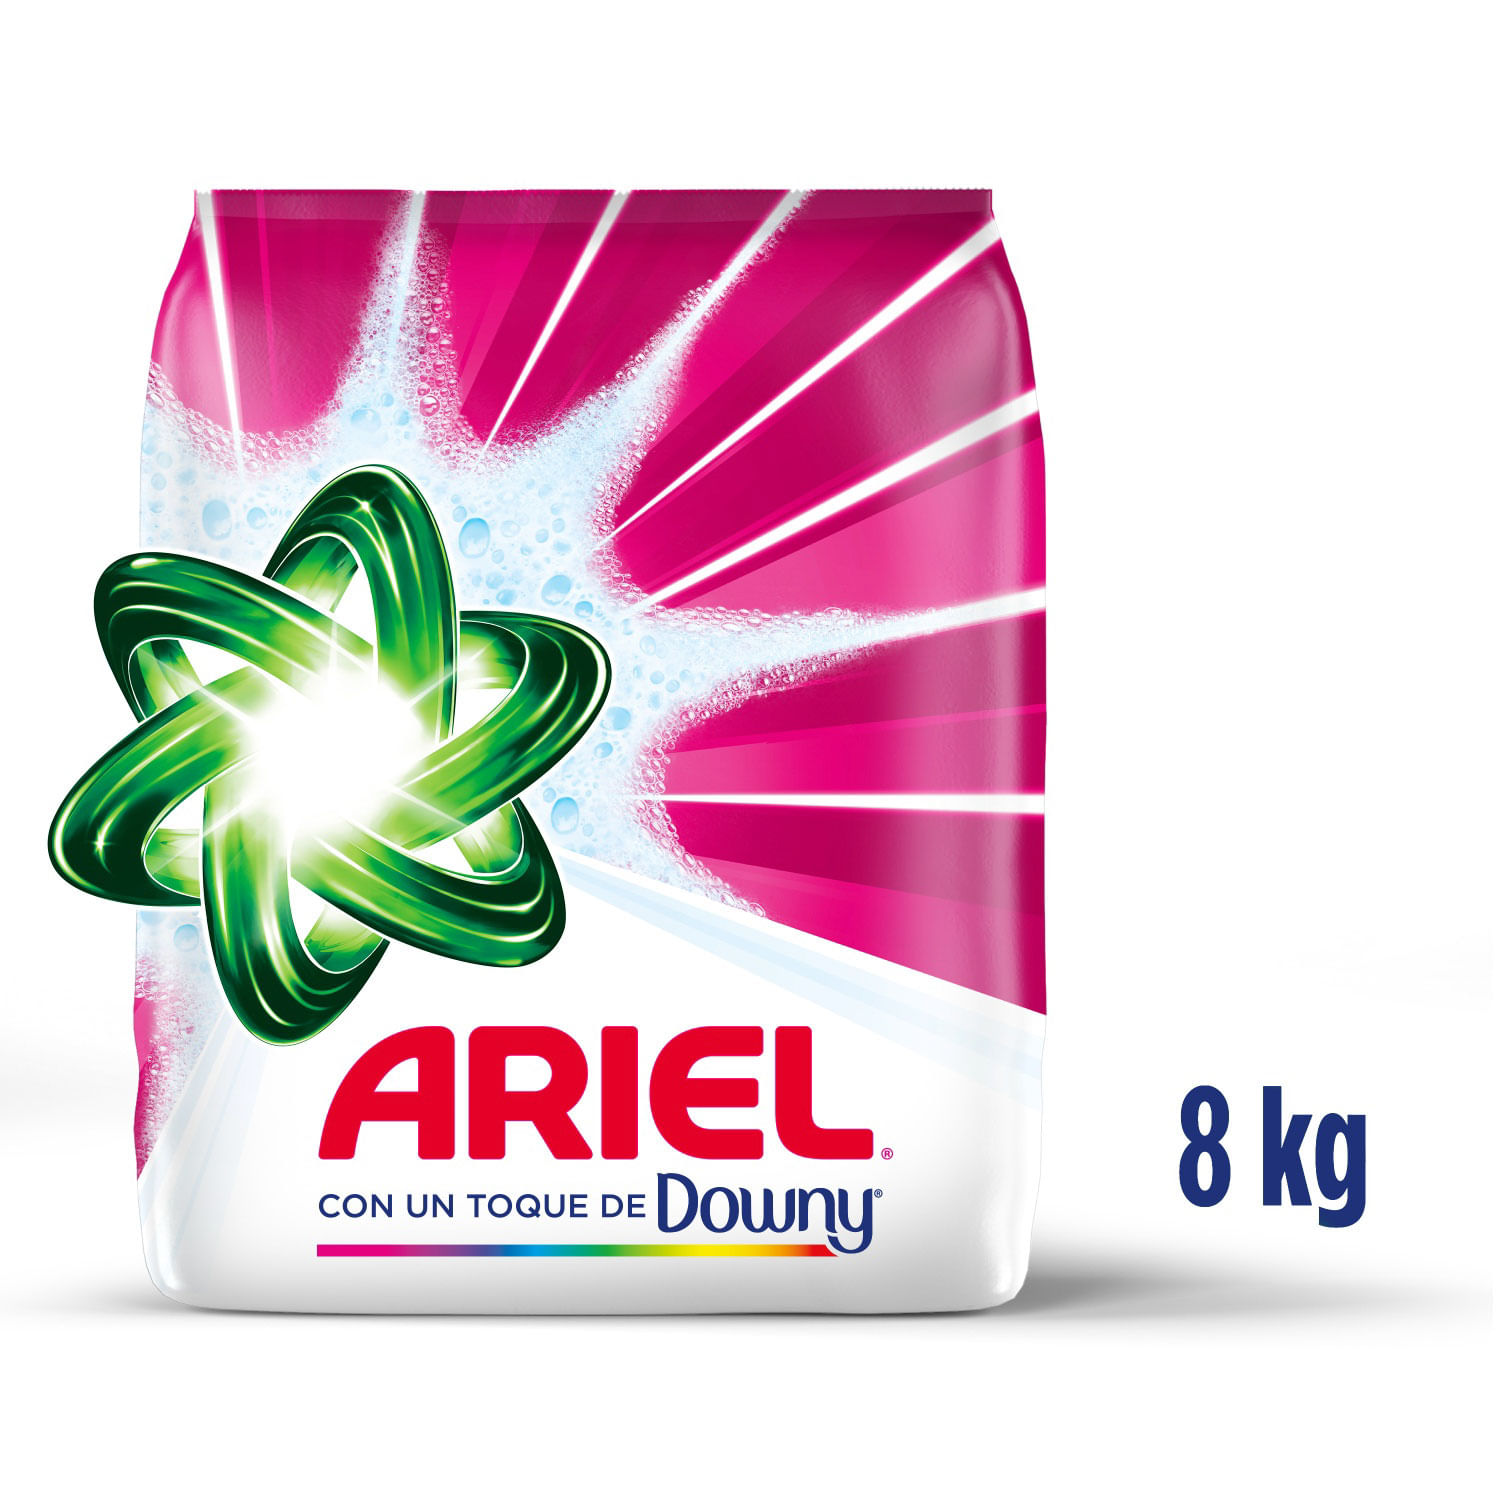 Ariel Básico Detergente en Polvo